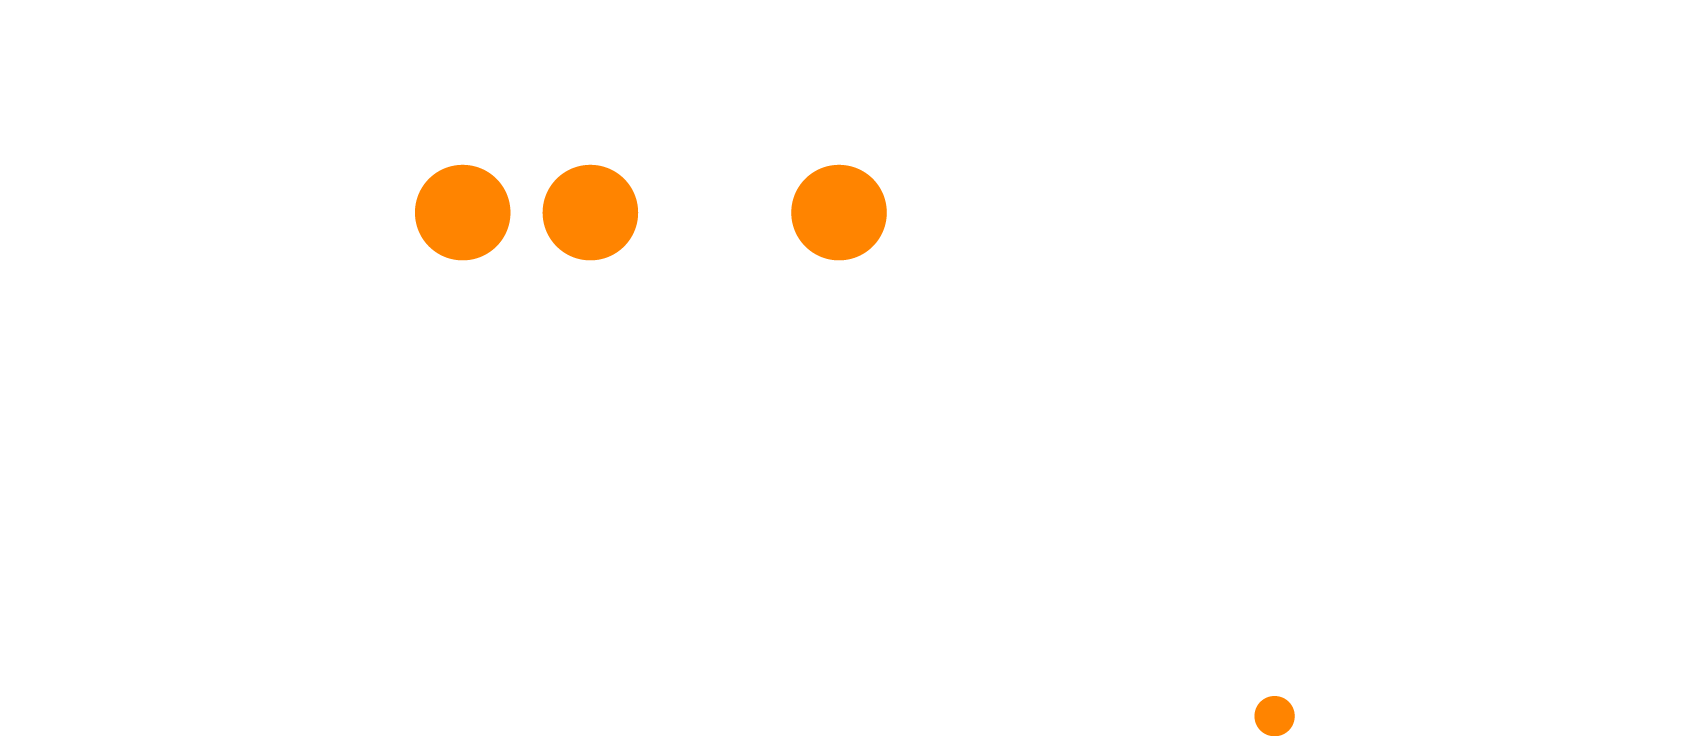 biiligo.com